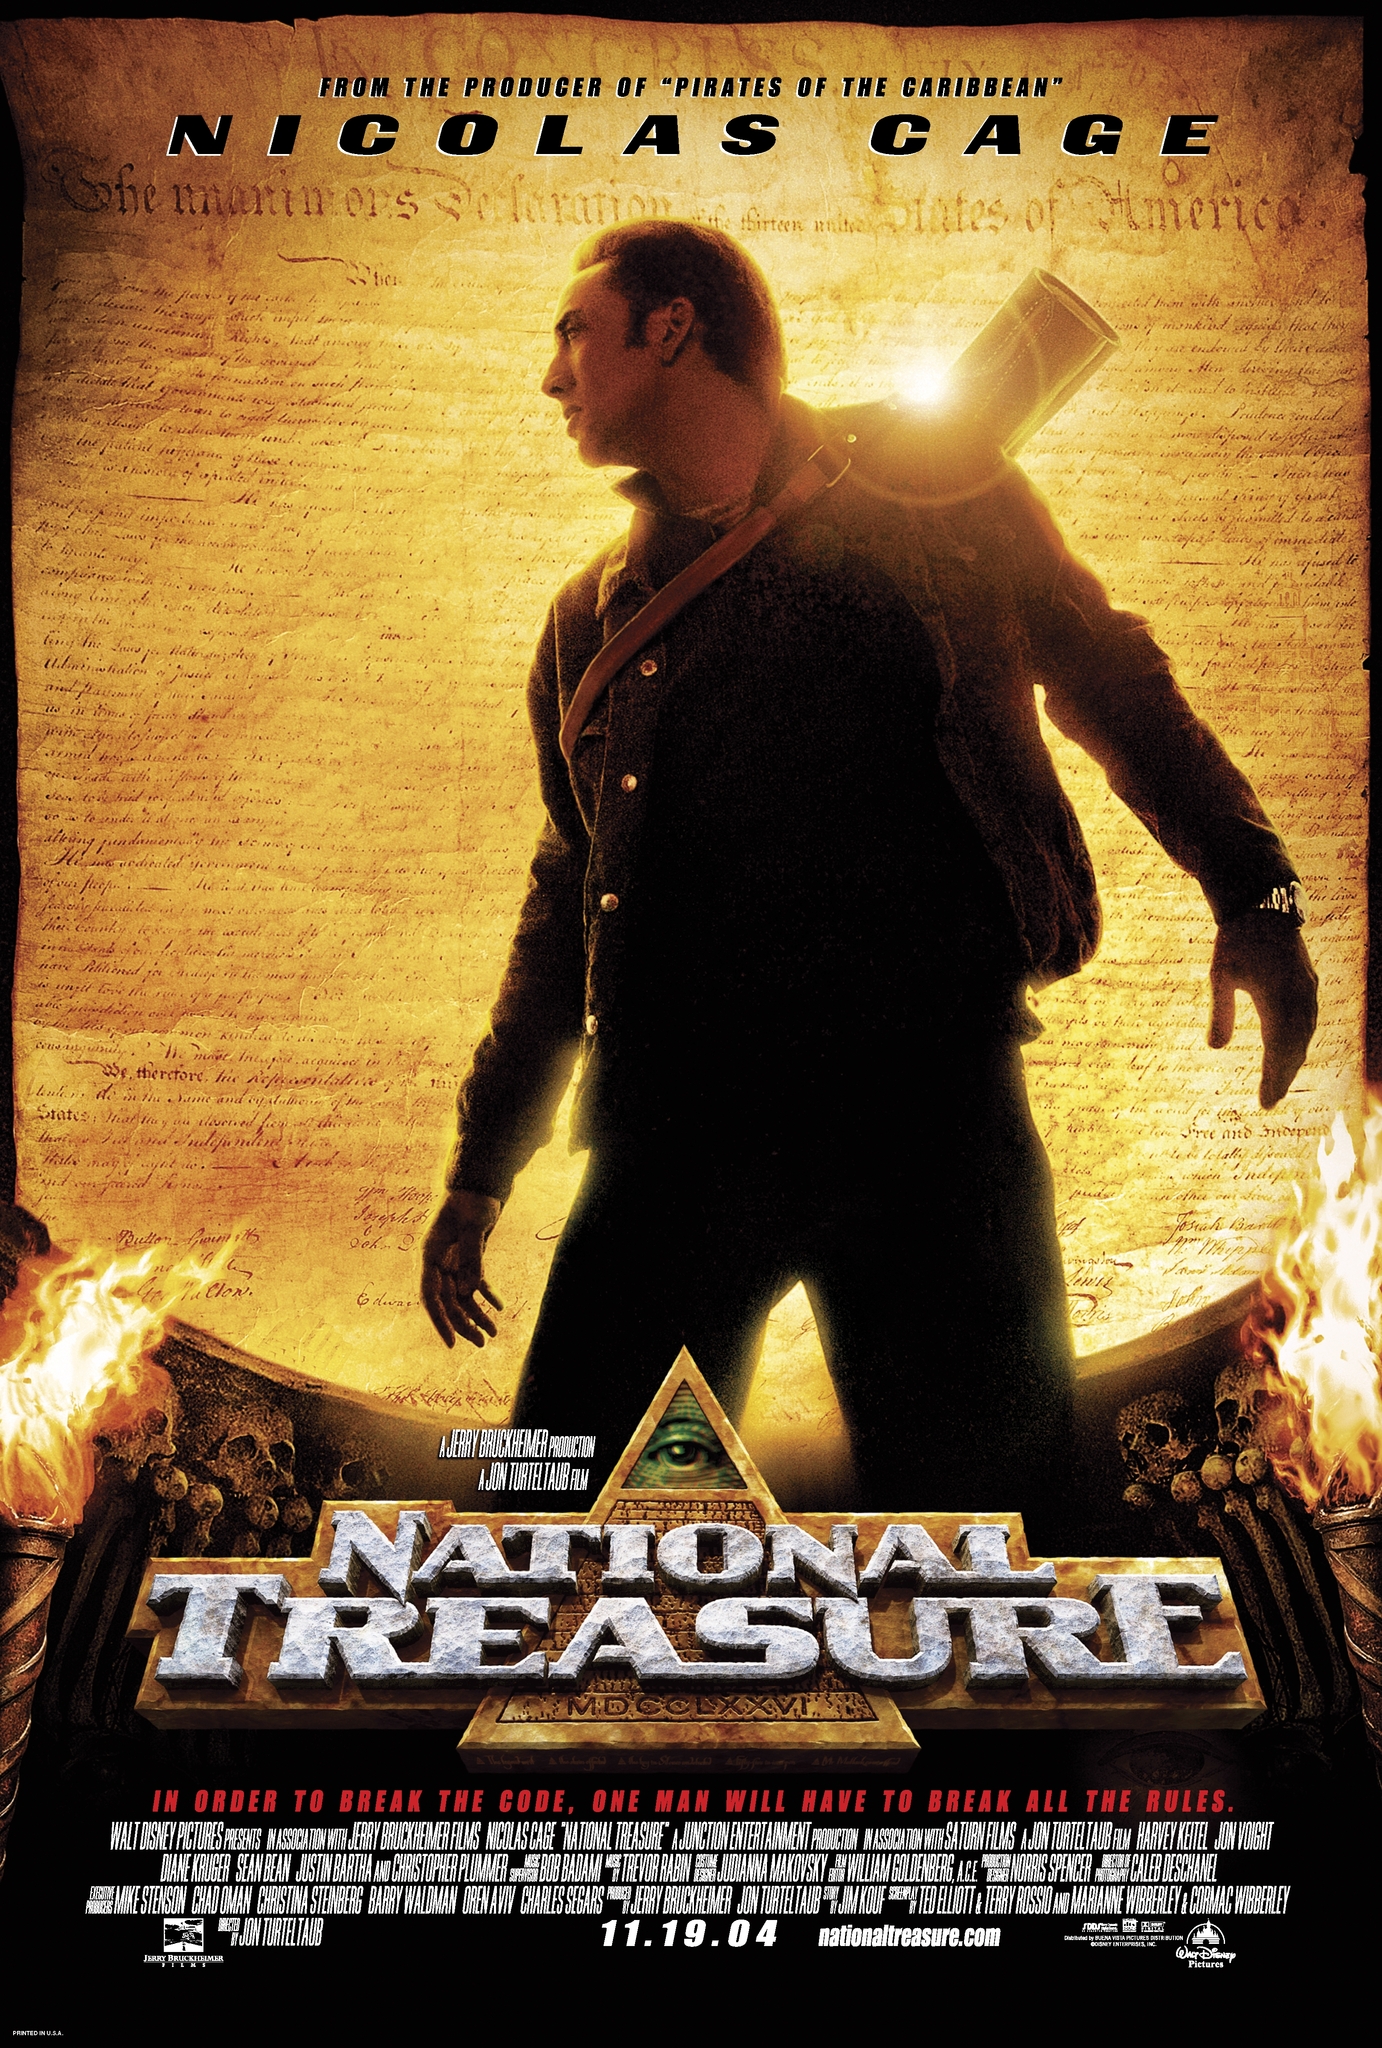 National Treasure 1 (2004) ปฎิบัติการเดือดล่าบันทึกสุดขอบโลก 1 Nicolas Cage